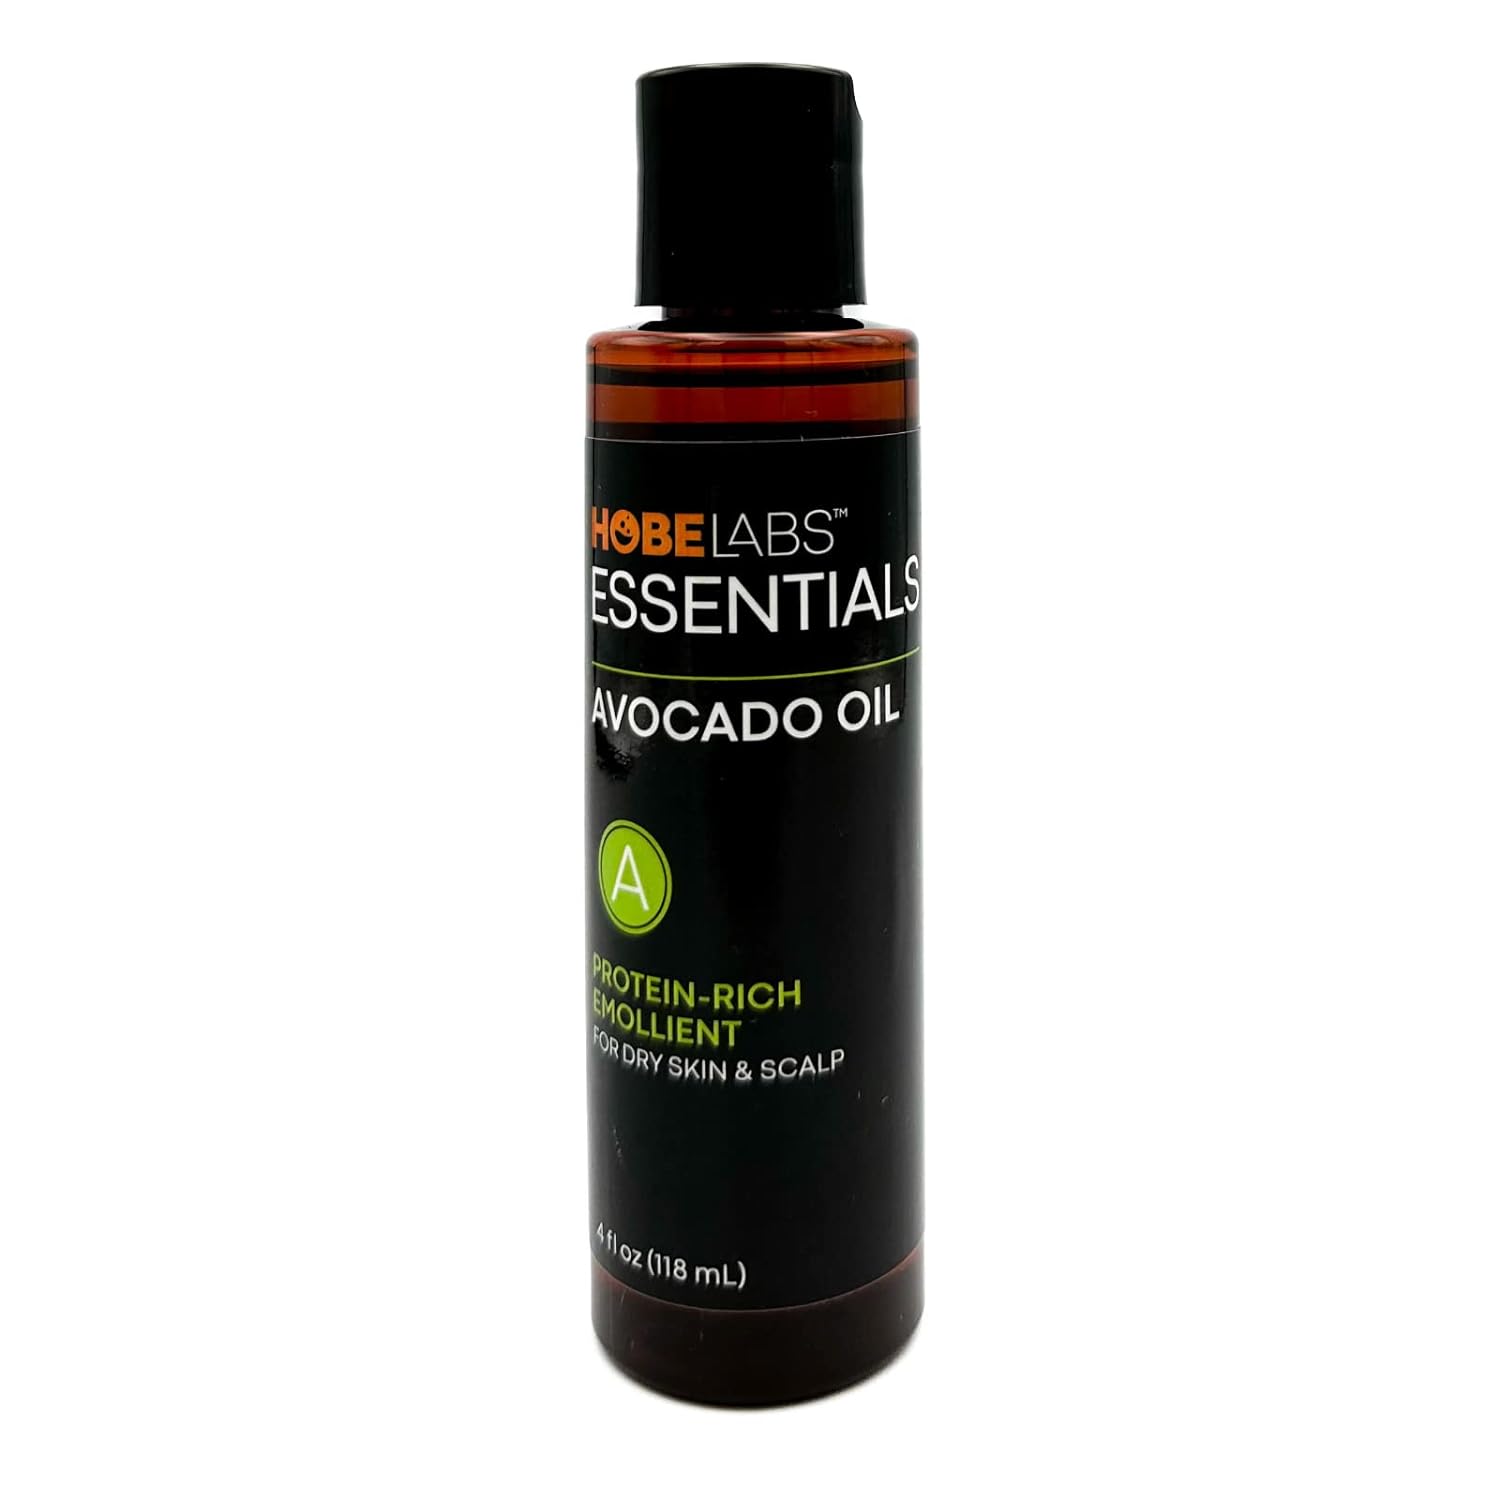 Hobe Labs Avocado Oil, 4 oz - Nourishes and Moisturizes Skin, Anti-Oxi